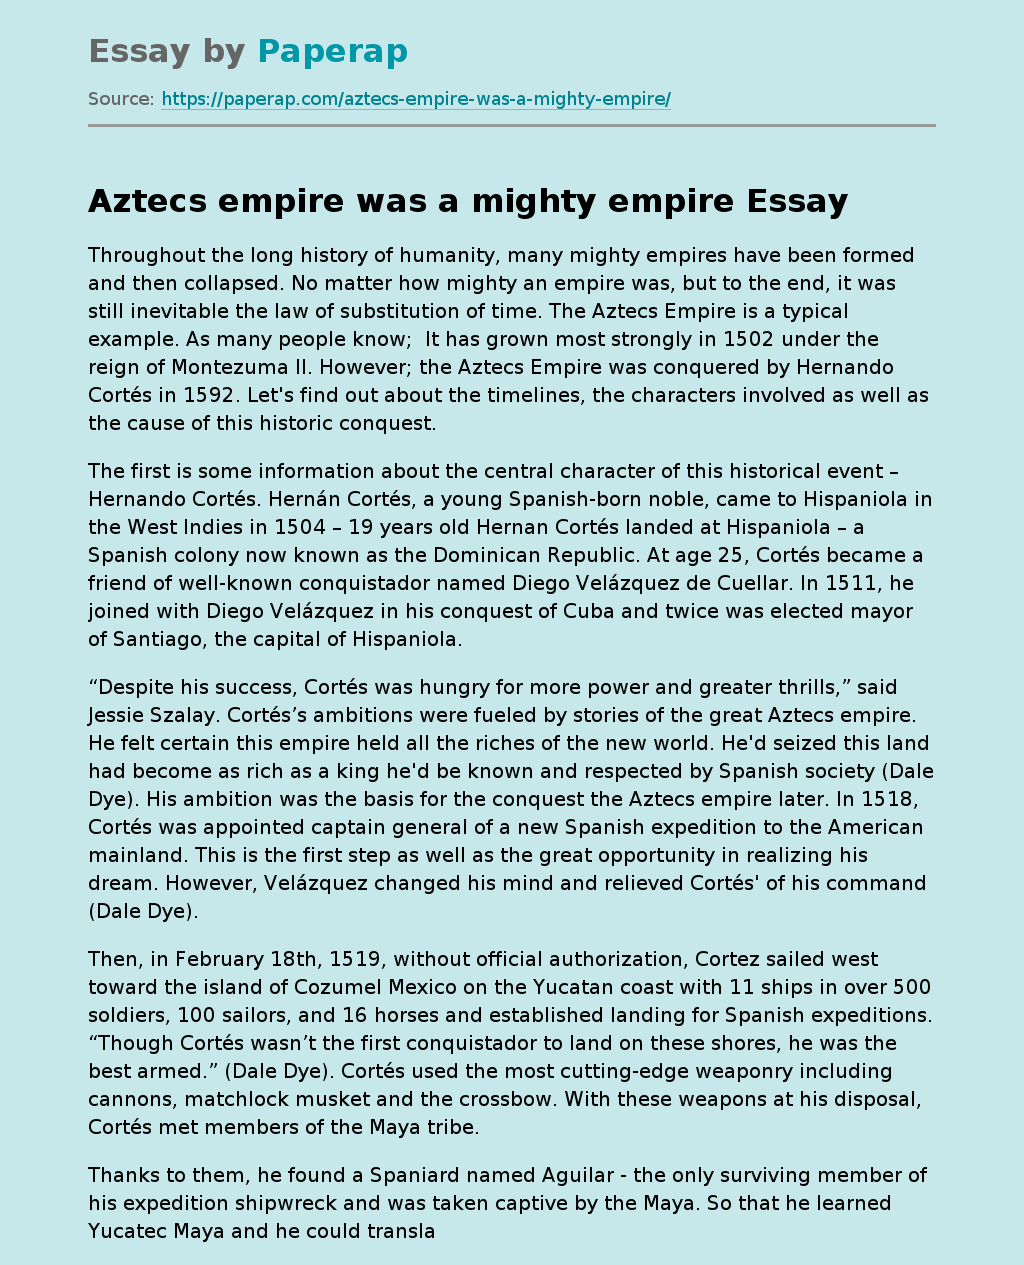 Aztecs empire was a mighty empire